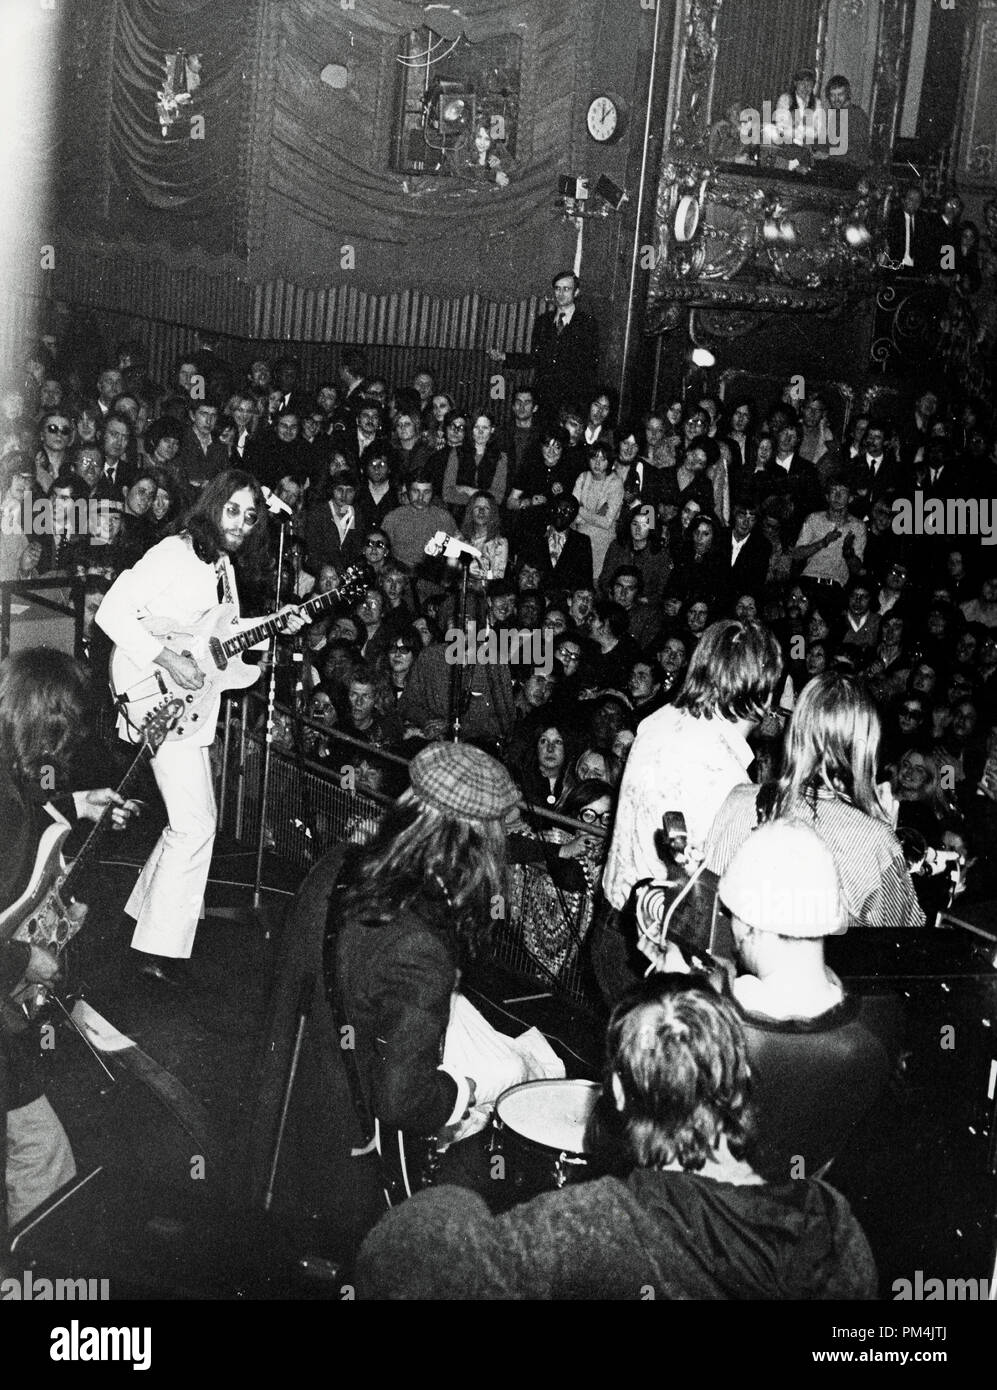 John Lennon et Yoko Ono au Lyceum Ballroom de Londres, February16,1969. Référence # 1013 Fichier 046 THA © CCR /Le Hollywood Archive - Tous droits réservés. Banque D'Images